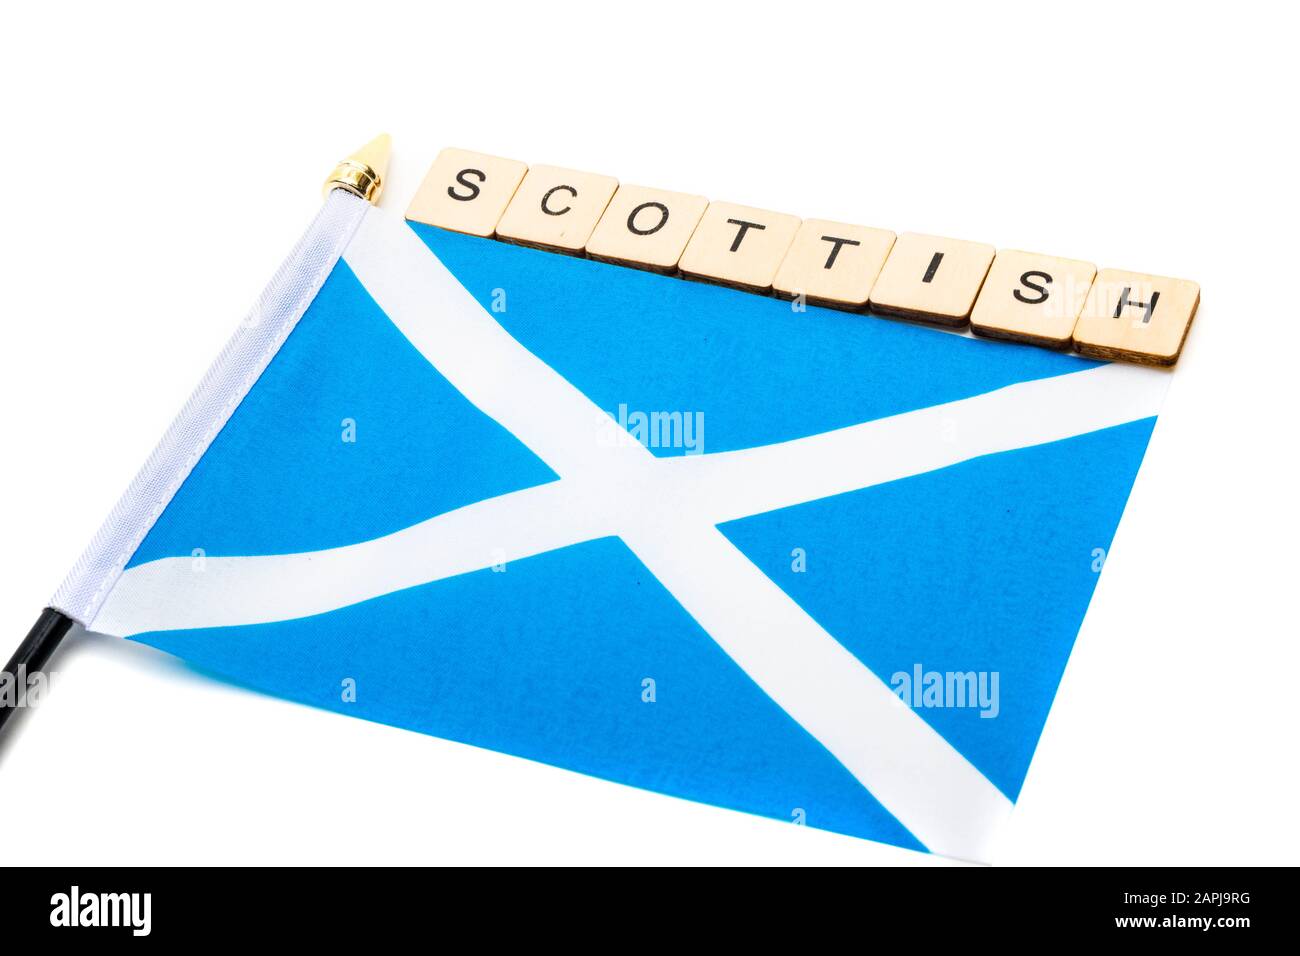 Die Nationalflaggen Schottlands, der Saltaire oder das Kreuz von St Andrews auf weißem Grund mit einem Schild, das schottisch liest Stockfoto